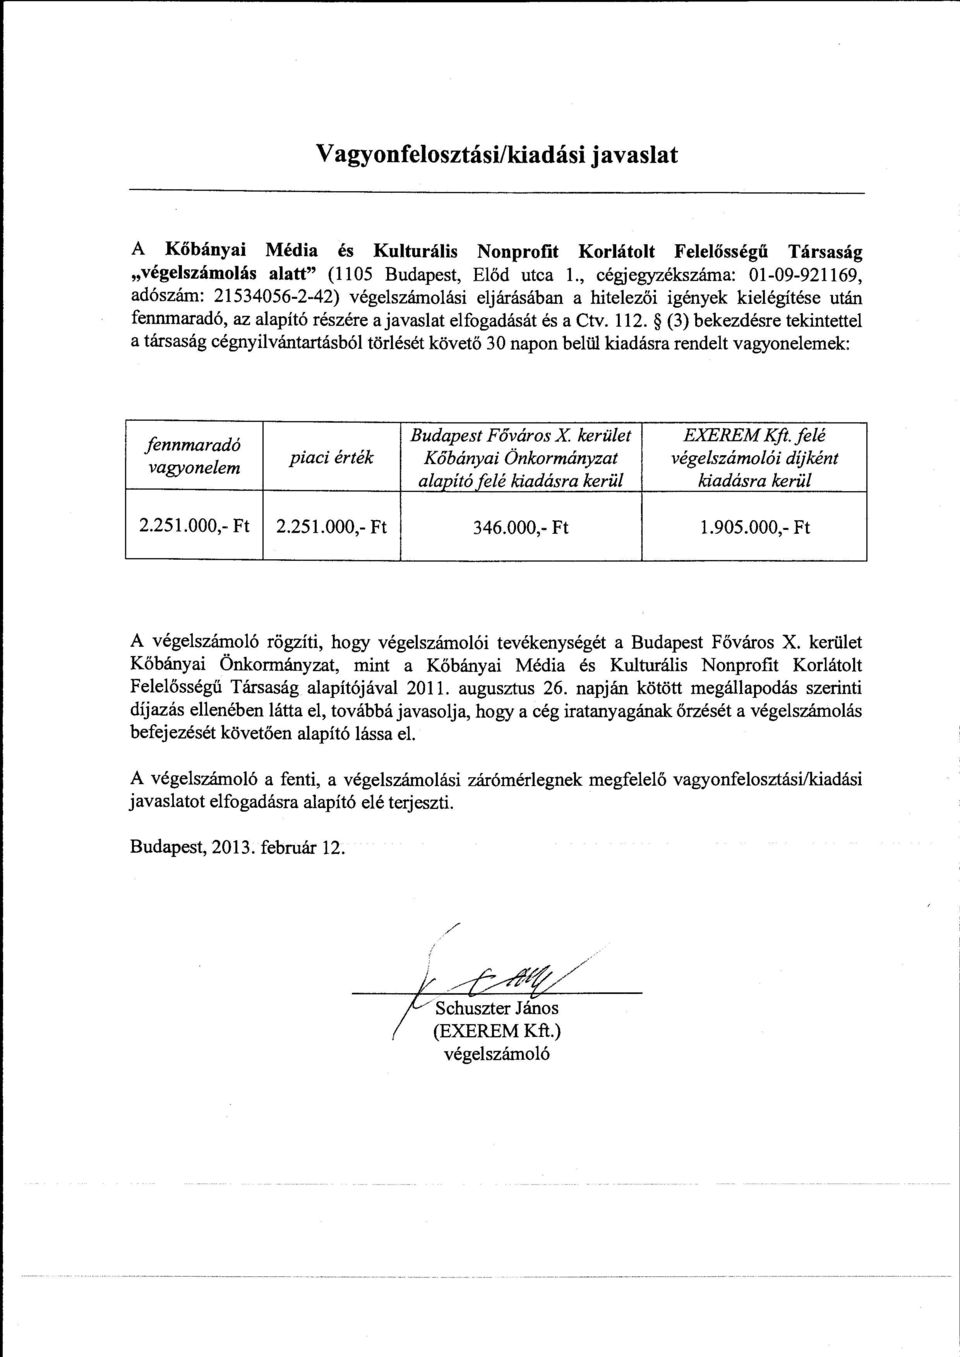 (3) bekezdésre tekintettel a társaság cégnyilvántartásból törlését követő 30 napon belill kiadásra rendelt vagyonelemek fennmaradó vagyonelem Budapest Főváros X kerület EXEREM Kft.